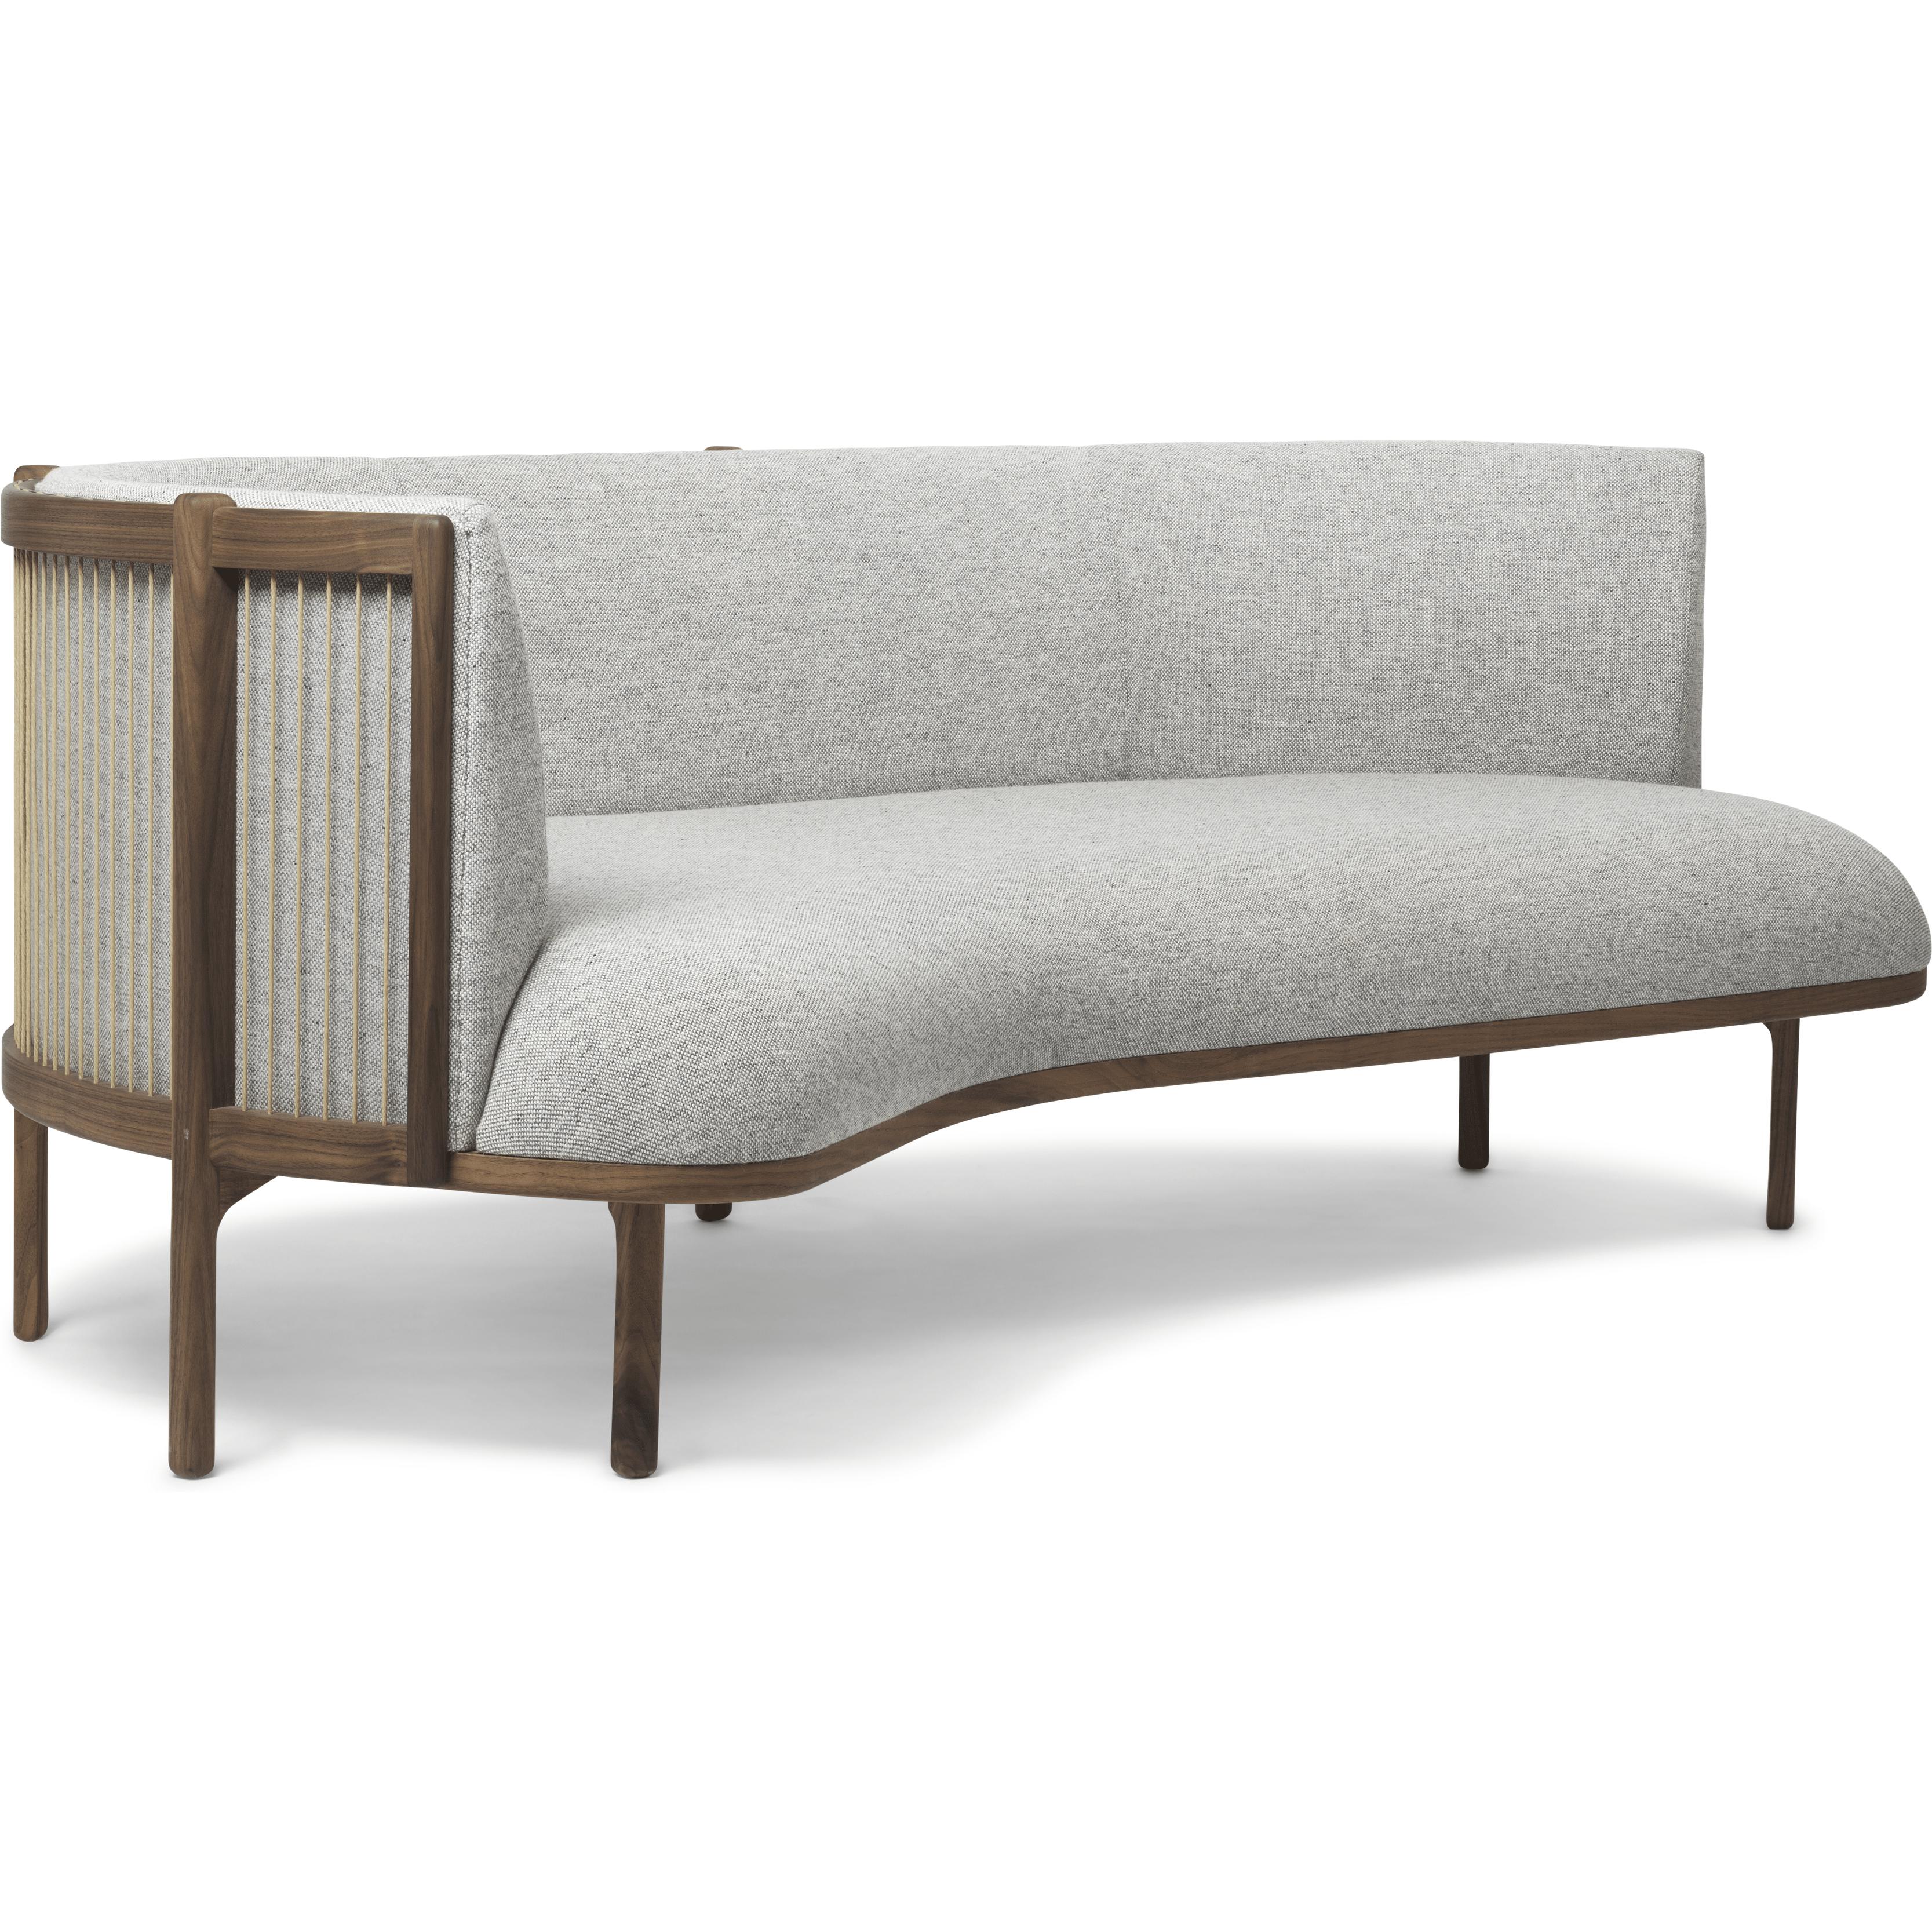 Carl Hansen RF1903 L Sideways Sofa 3 -zits linker Walnut Oil/Hallingdal 116 Fabic, Gray/Natural Brown